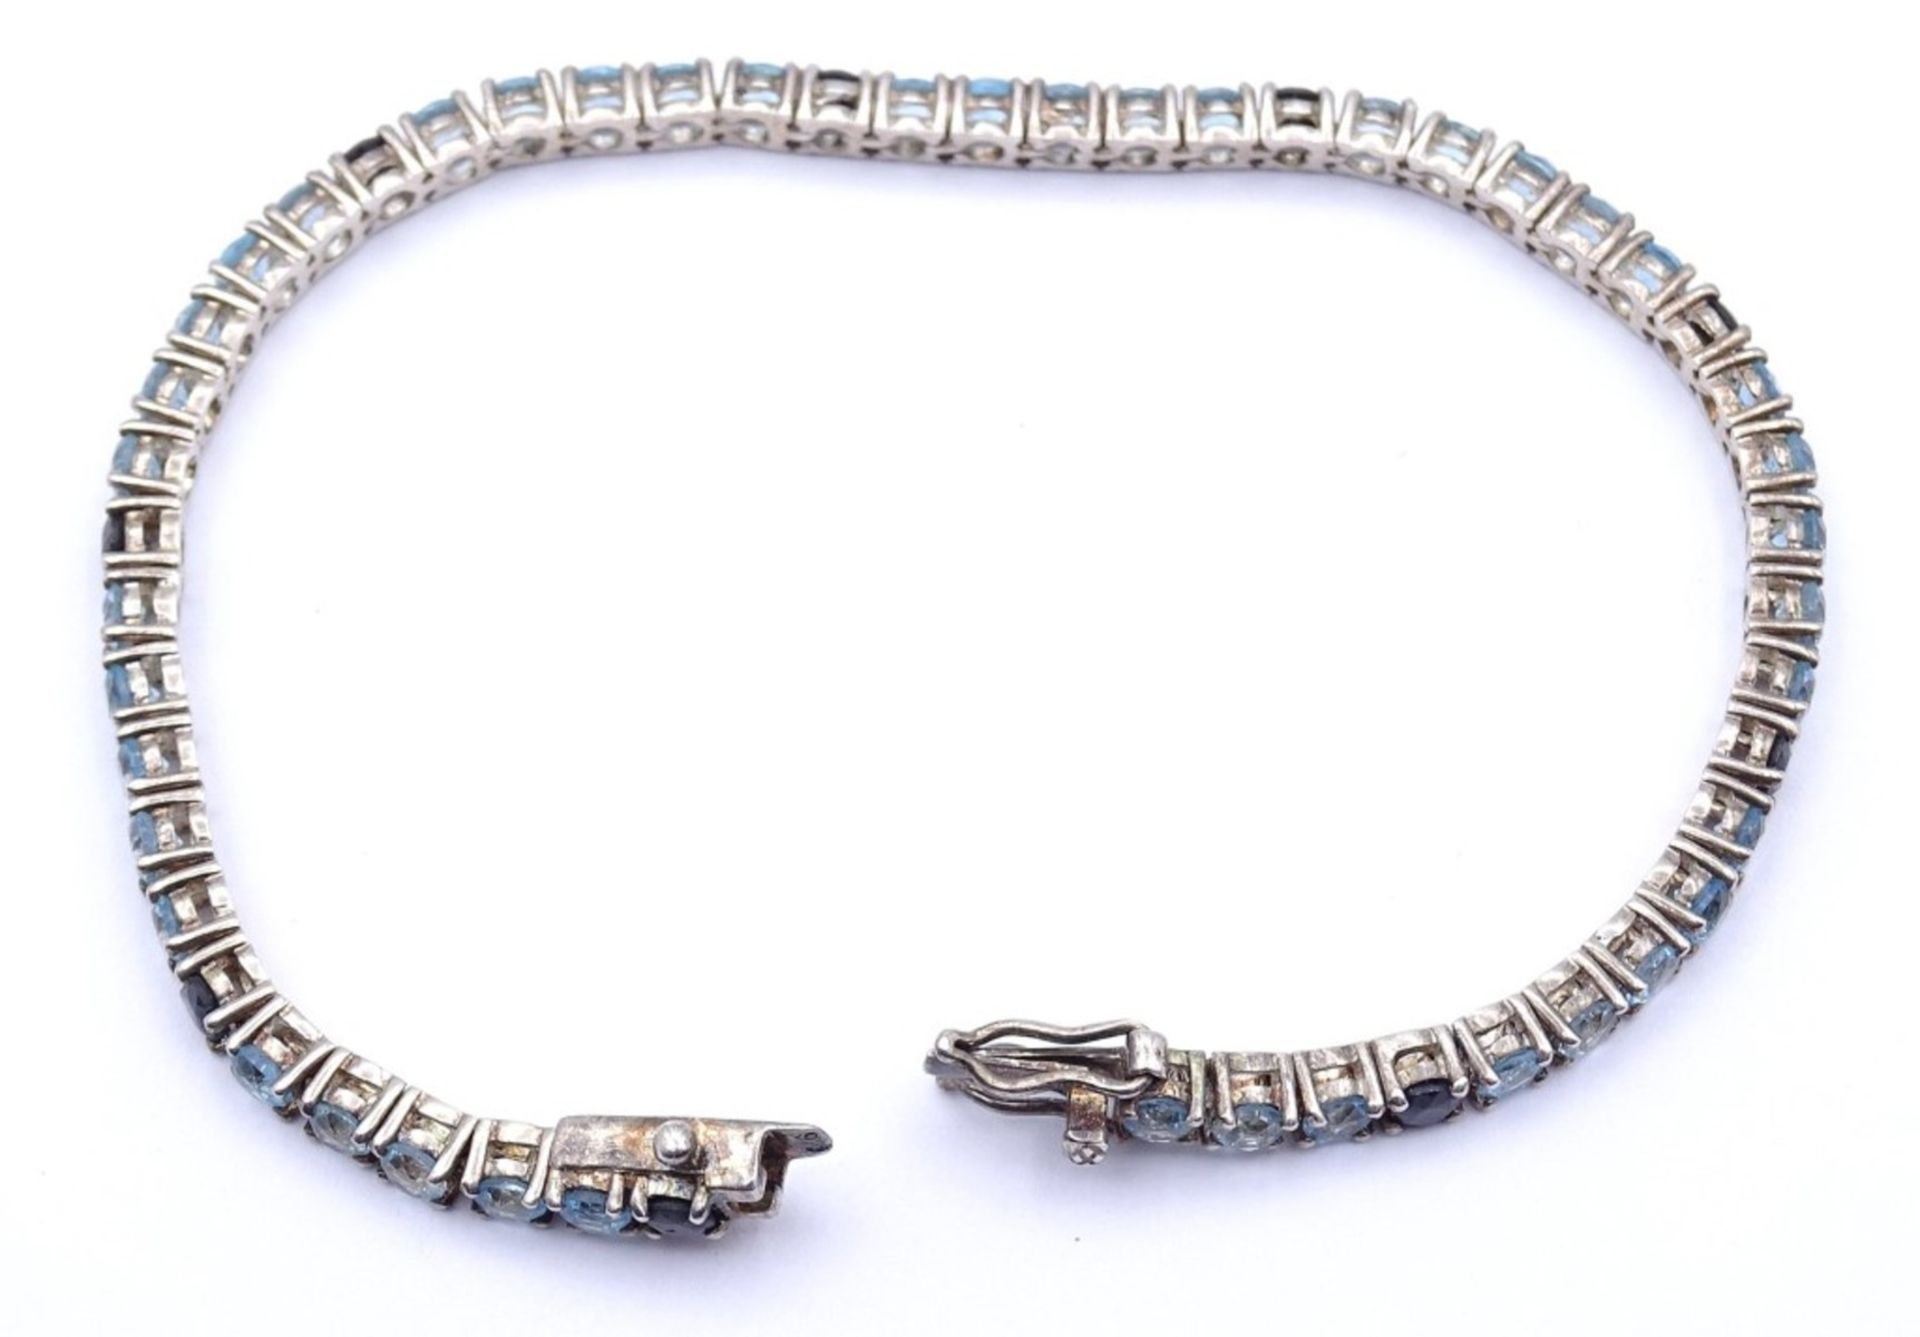 Silber Armband mit rund facc.Edelsteinen,Saphire und Blautopase?,Sterling Silber 0.925. L- 19cm, - Bild 4 aus 4